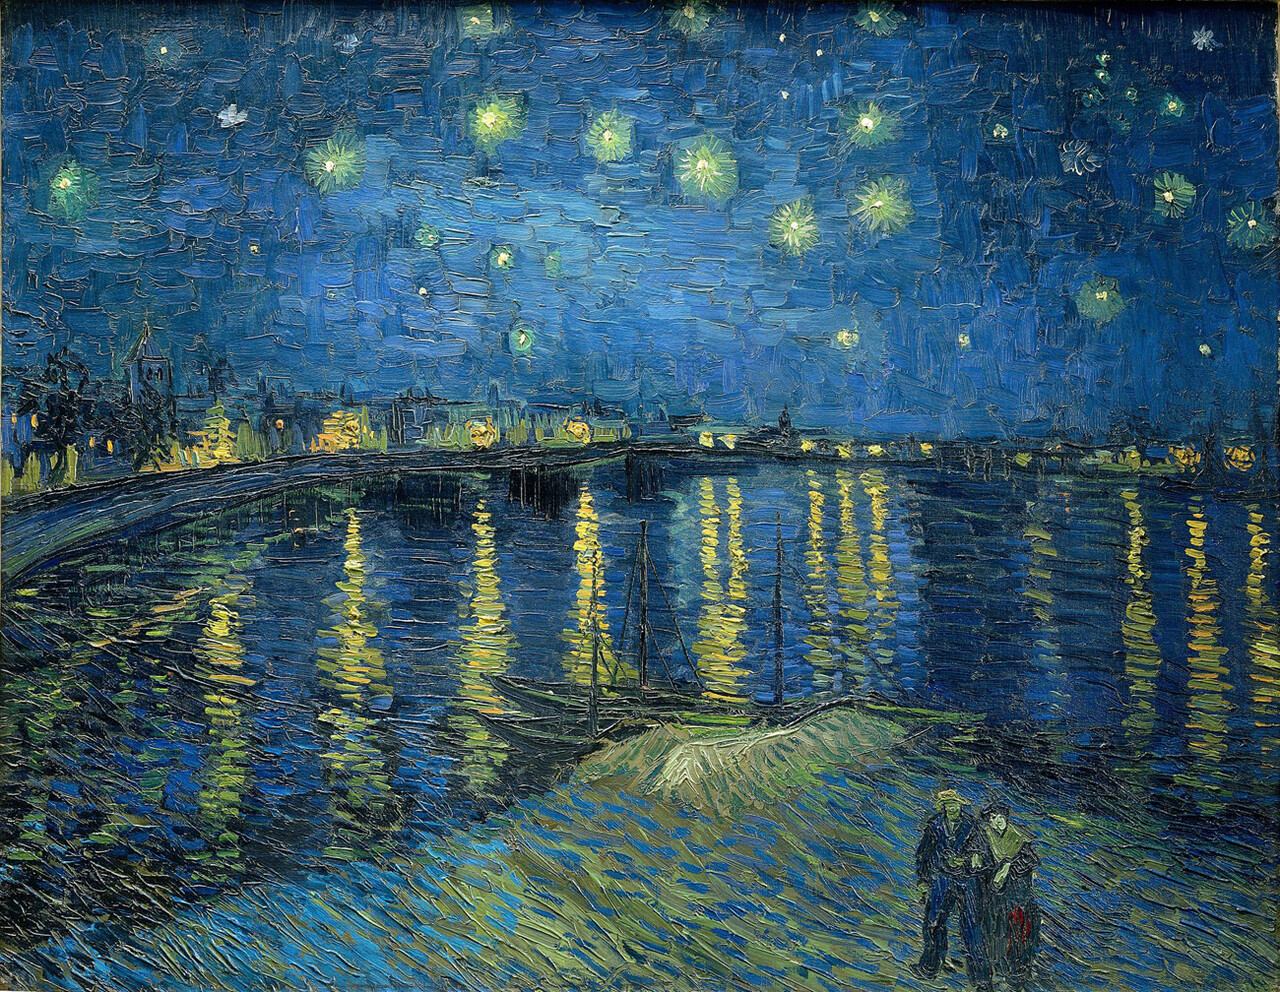 빈센트 반고흐의 1888년 작품 '론강의 별이 빛나는 밤'.